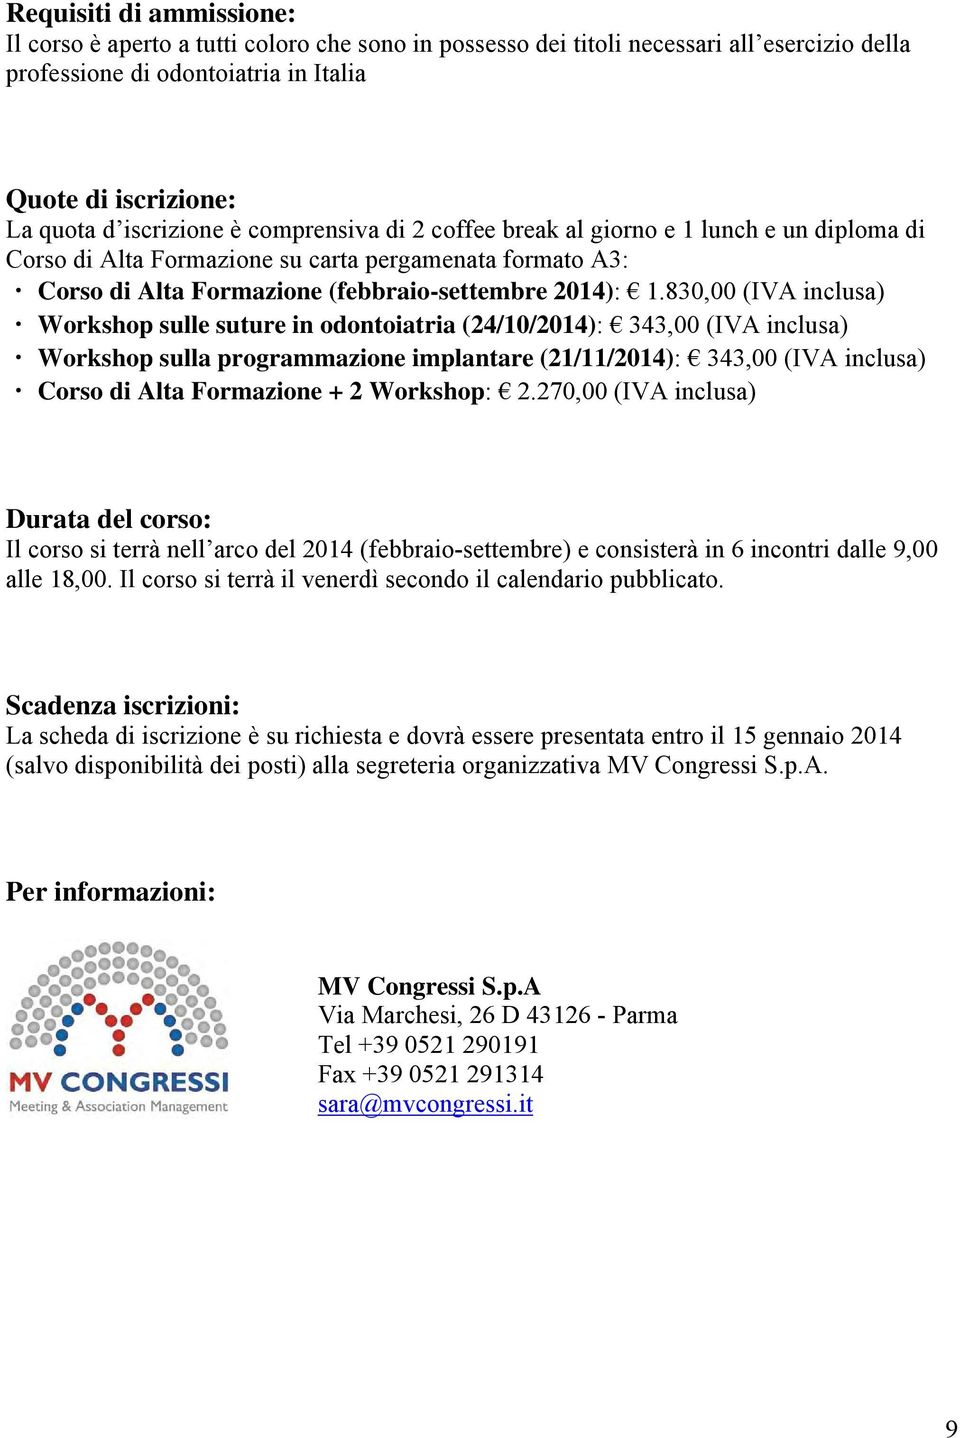 830,00 (IVA inclusa) Workshop sulle suture in odontoiatria (24/10/2014): 343,00 (IVA inclusa) Workshop sulla programmazione implantare (21/11/2014): 343,00 (IVA inclusa) Corso di Alta Formazione + 2